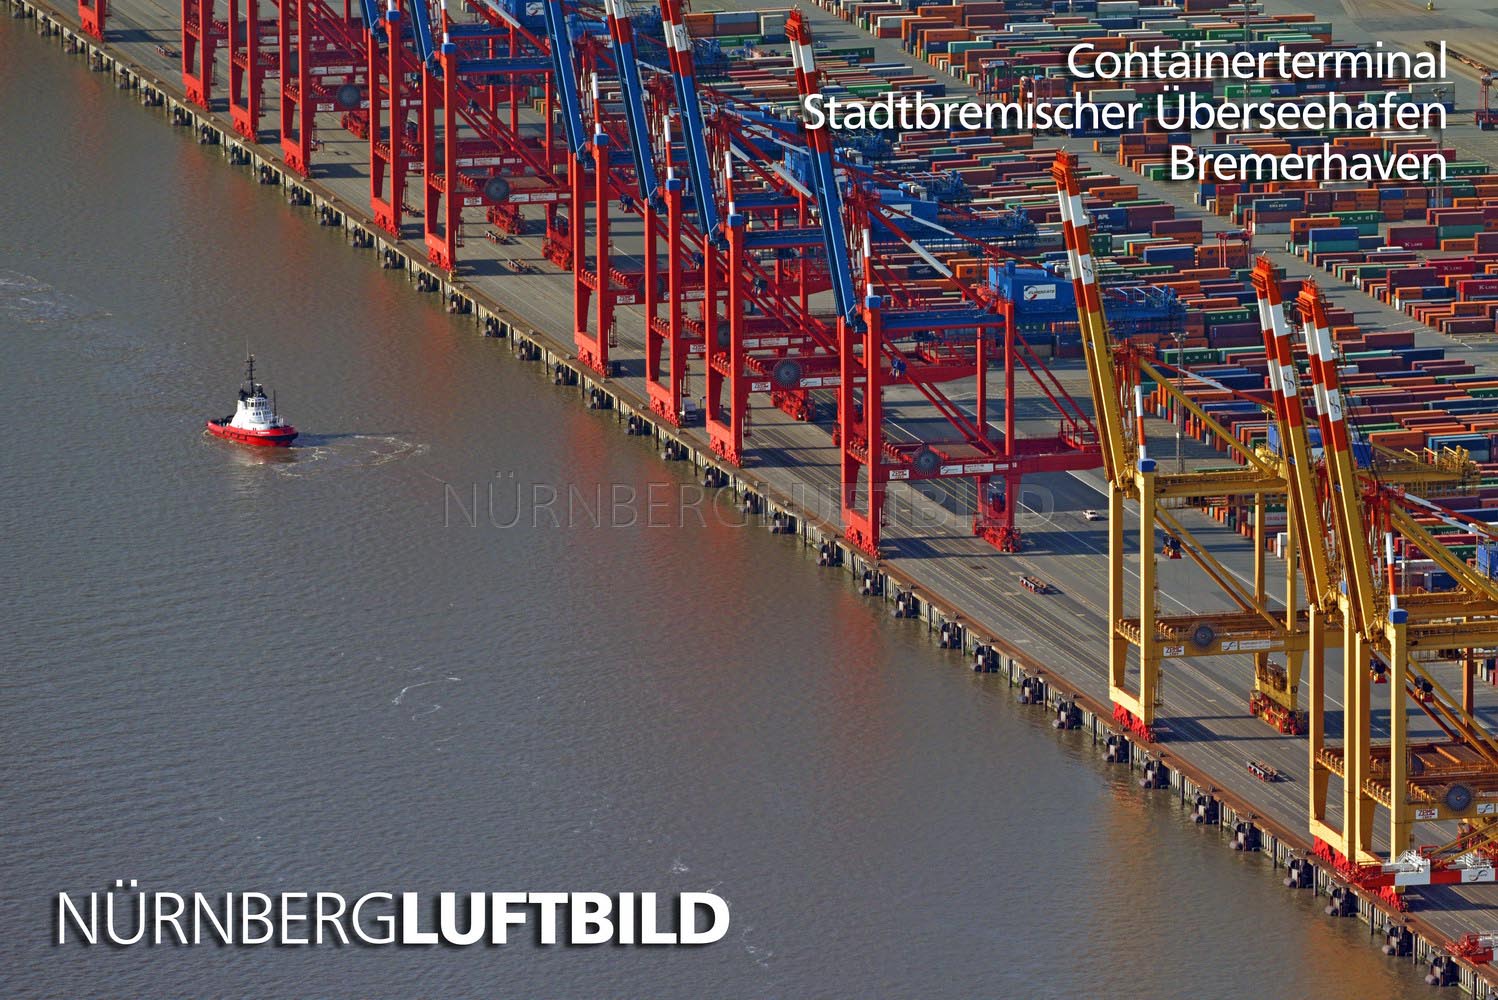 Containerterminal, Stadtbremischer Überseehafen, Luftbild